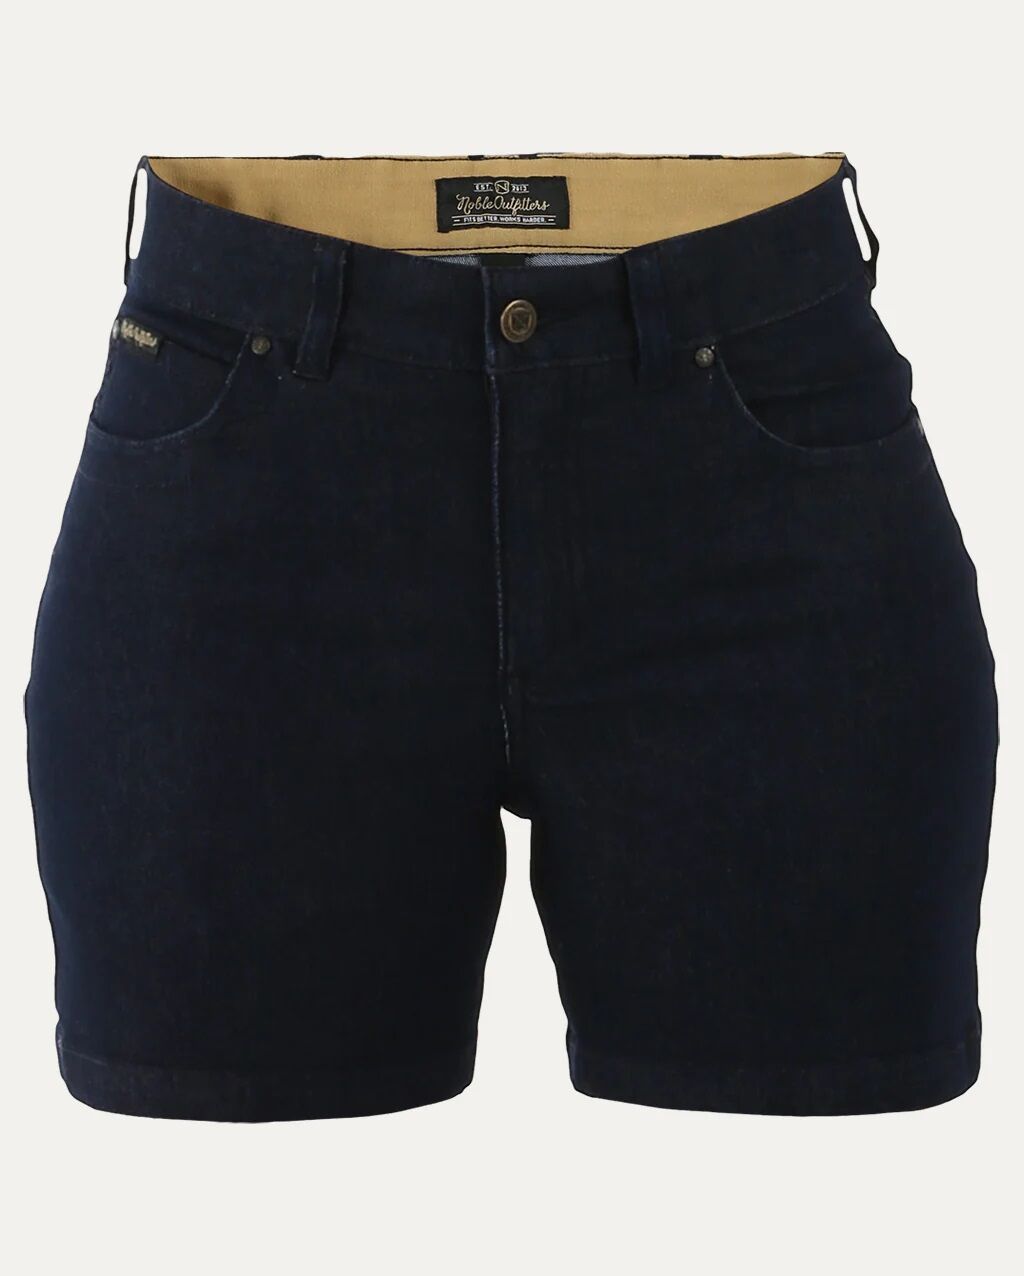 Jeans/Pants & Shorts